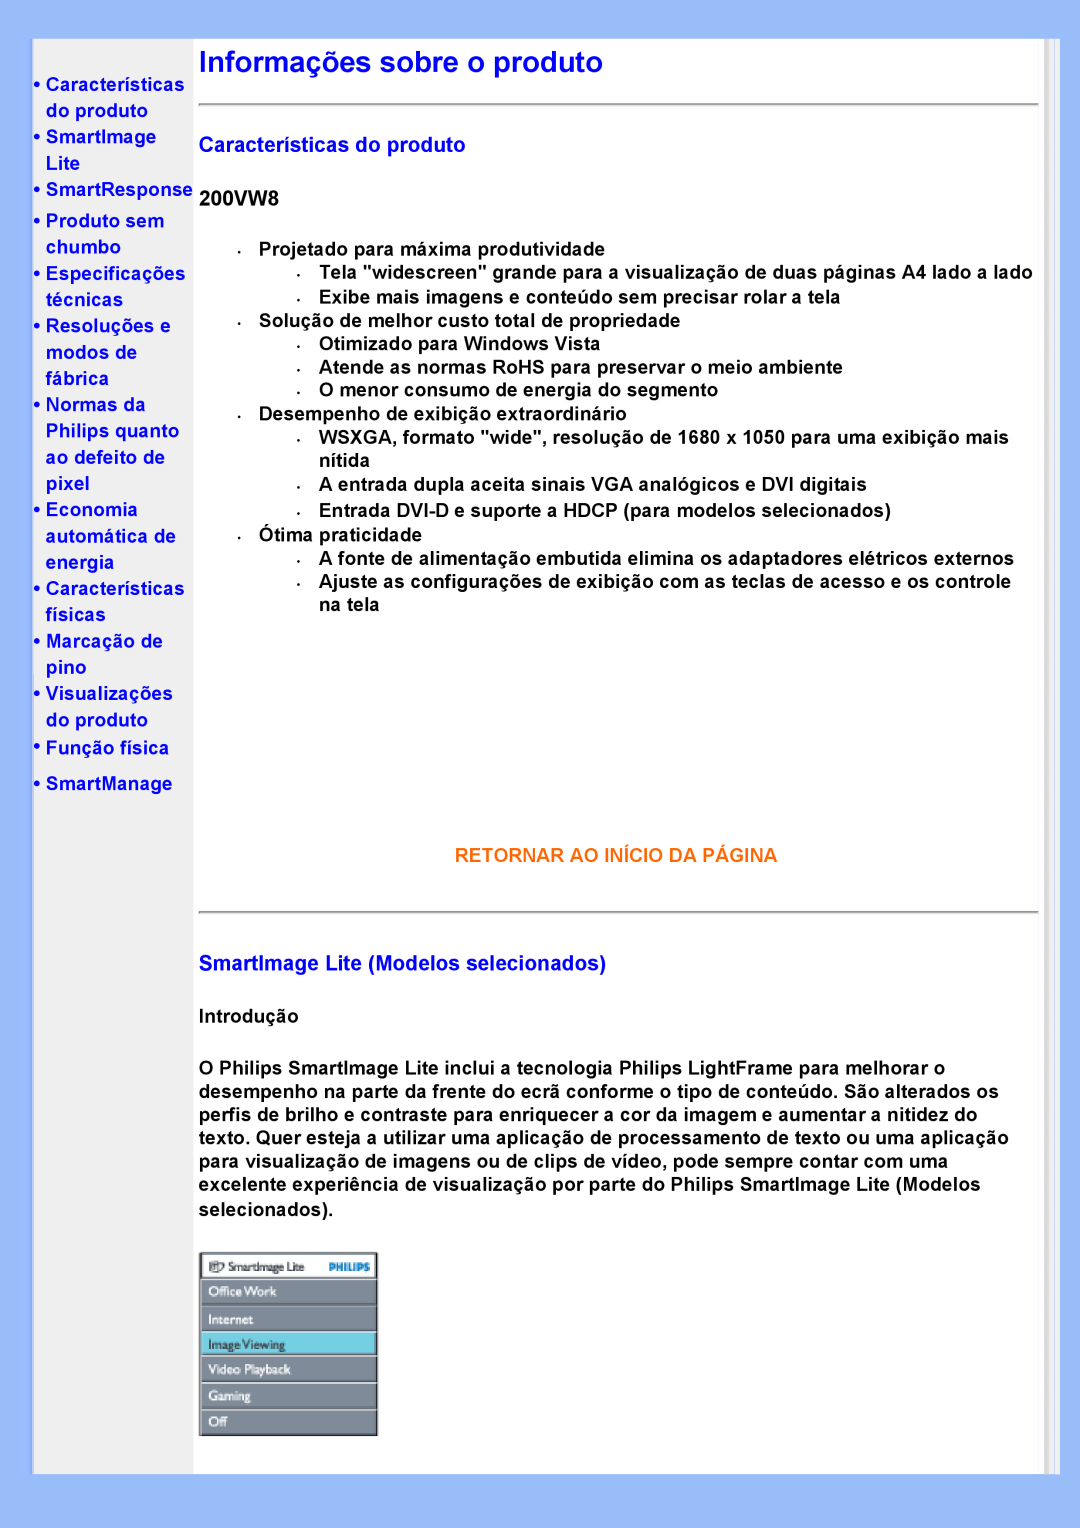 Philips 200VW8 Características Informações sobre o produto, Características do produto, Retornar Ao Início Da Página 